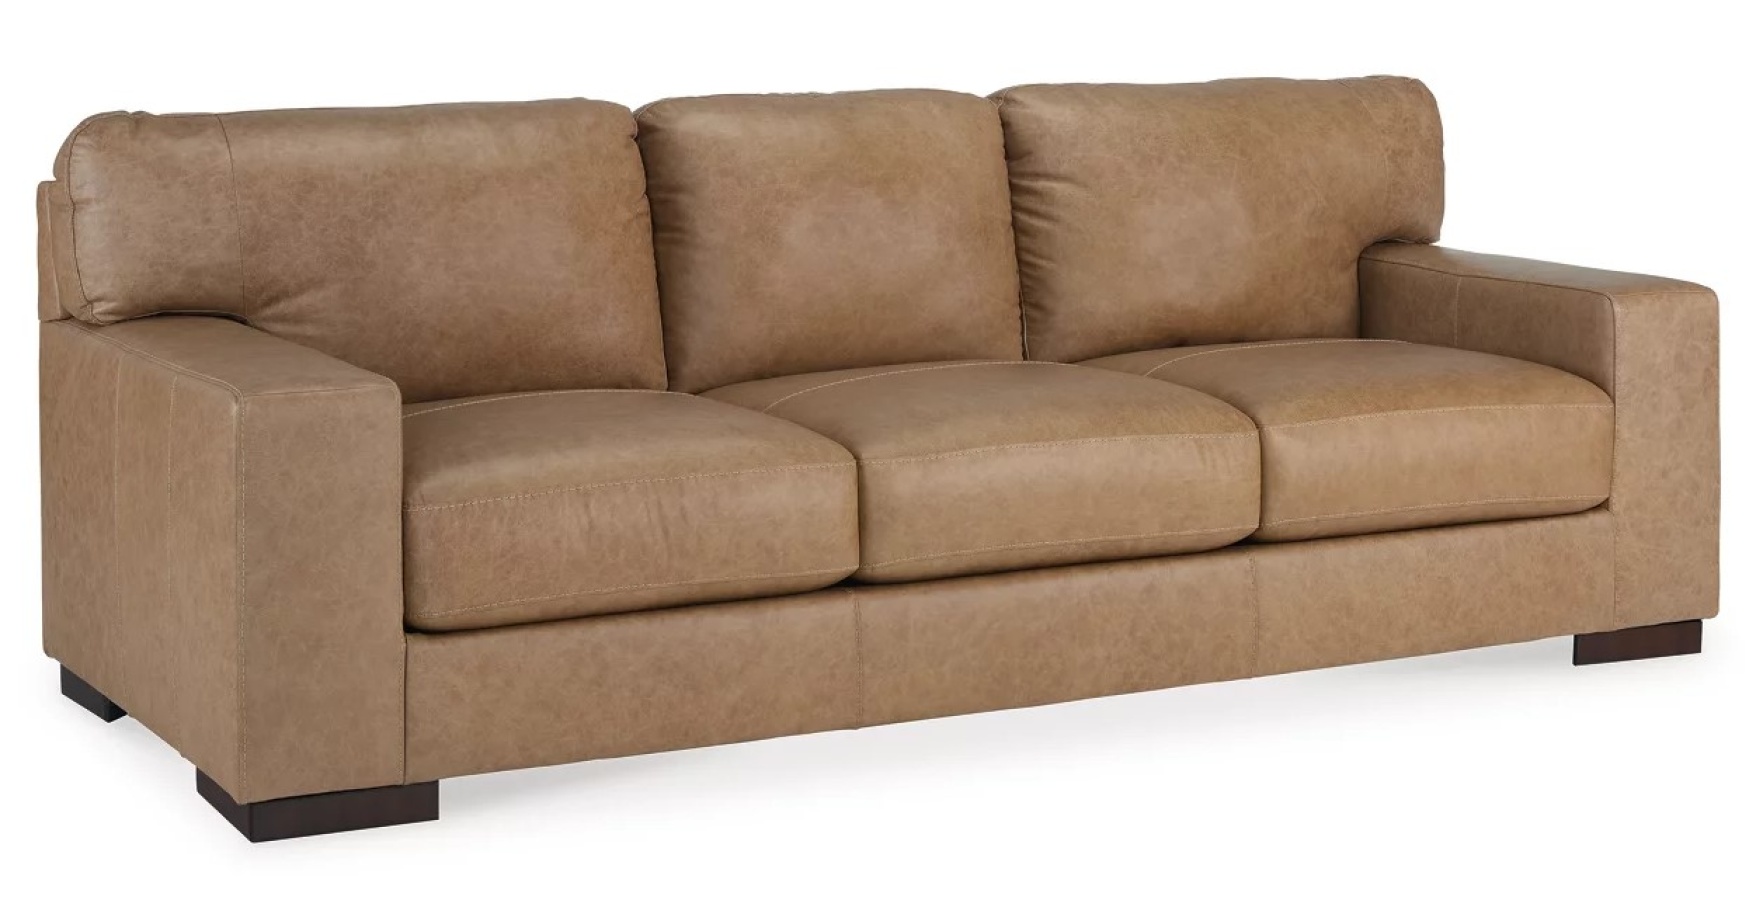 Lombardia Sofa